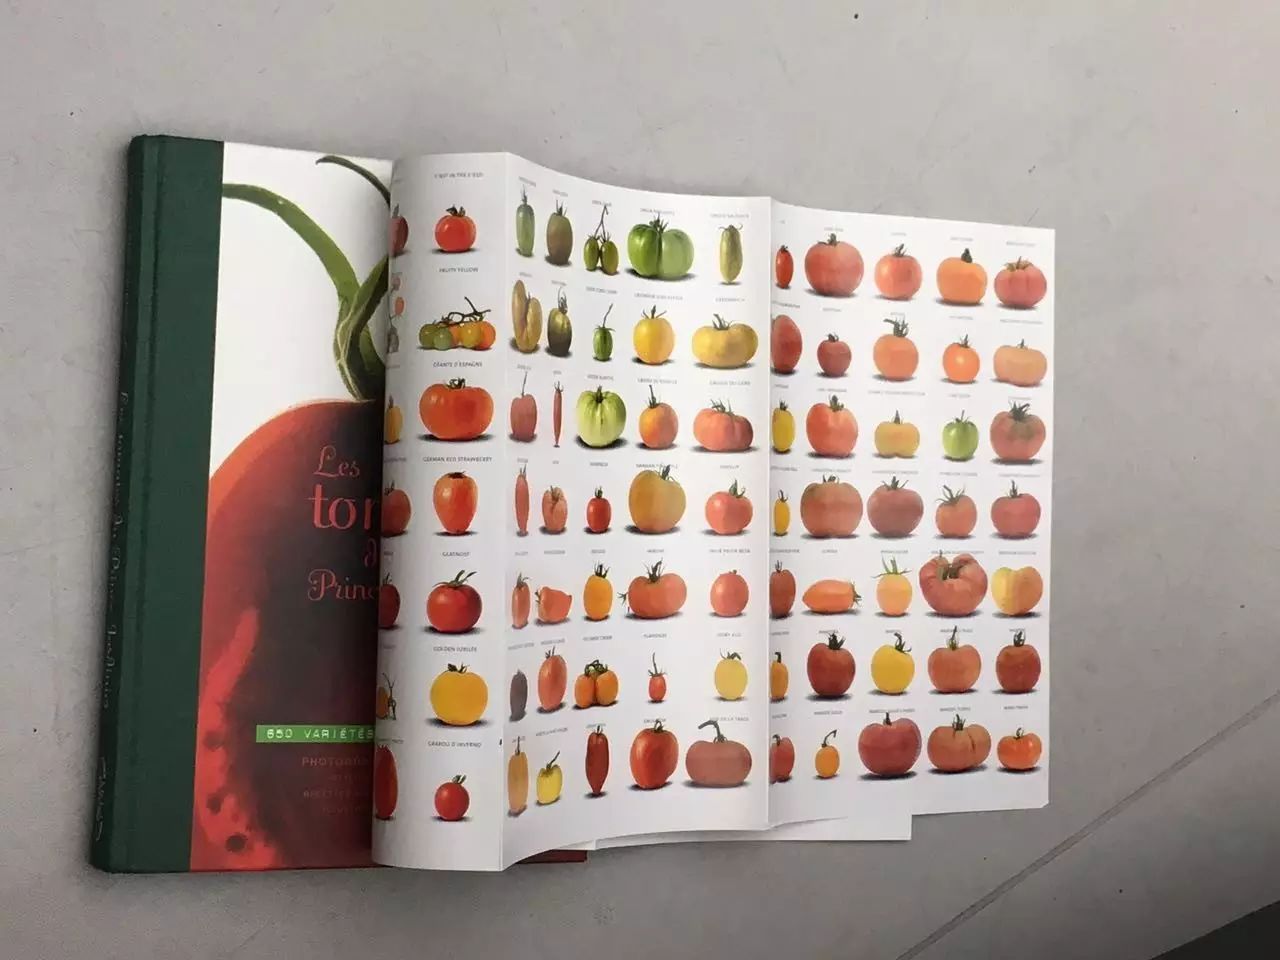 pic3_de Broglie出版的关于多样化品种的番茄的书   摄影：刘春兰.jpg